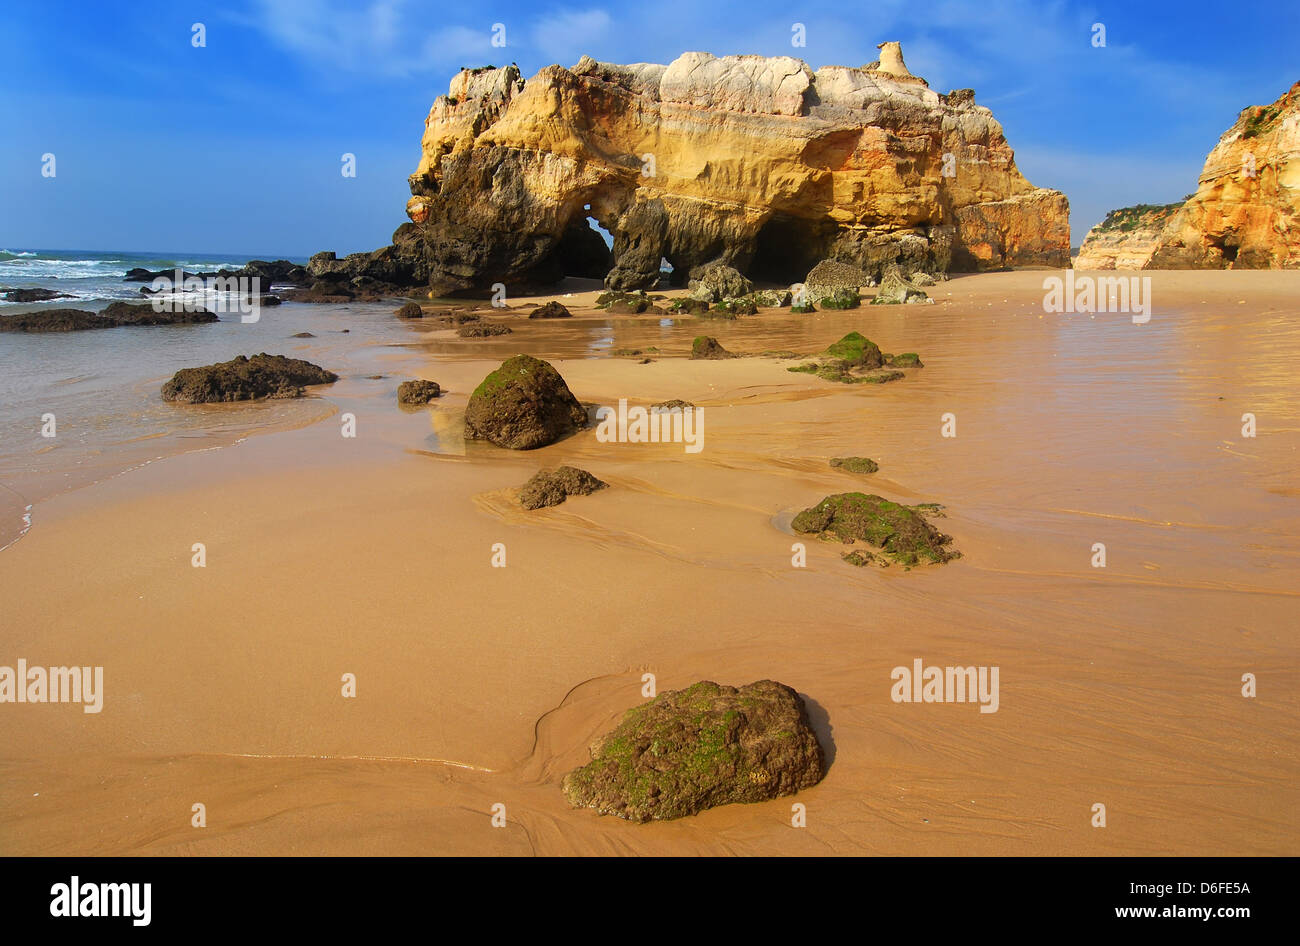 Praia da Rocha è la spiaggia e il centro abitato sull'Oceano Atlantico in Algarve, Portogallo meridionale. Foto Stock